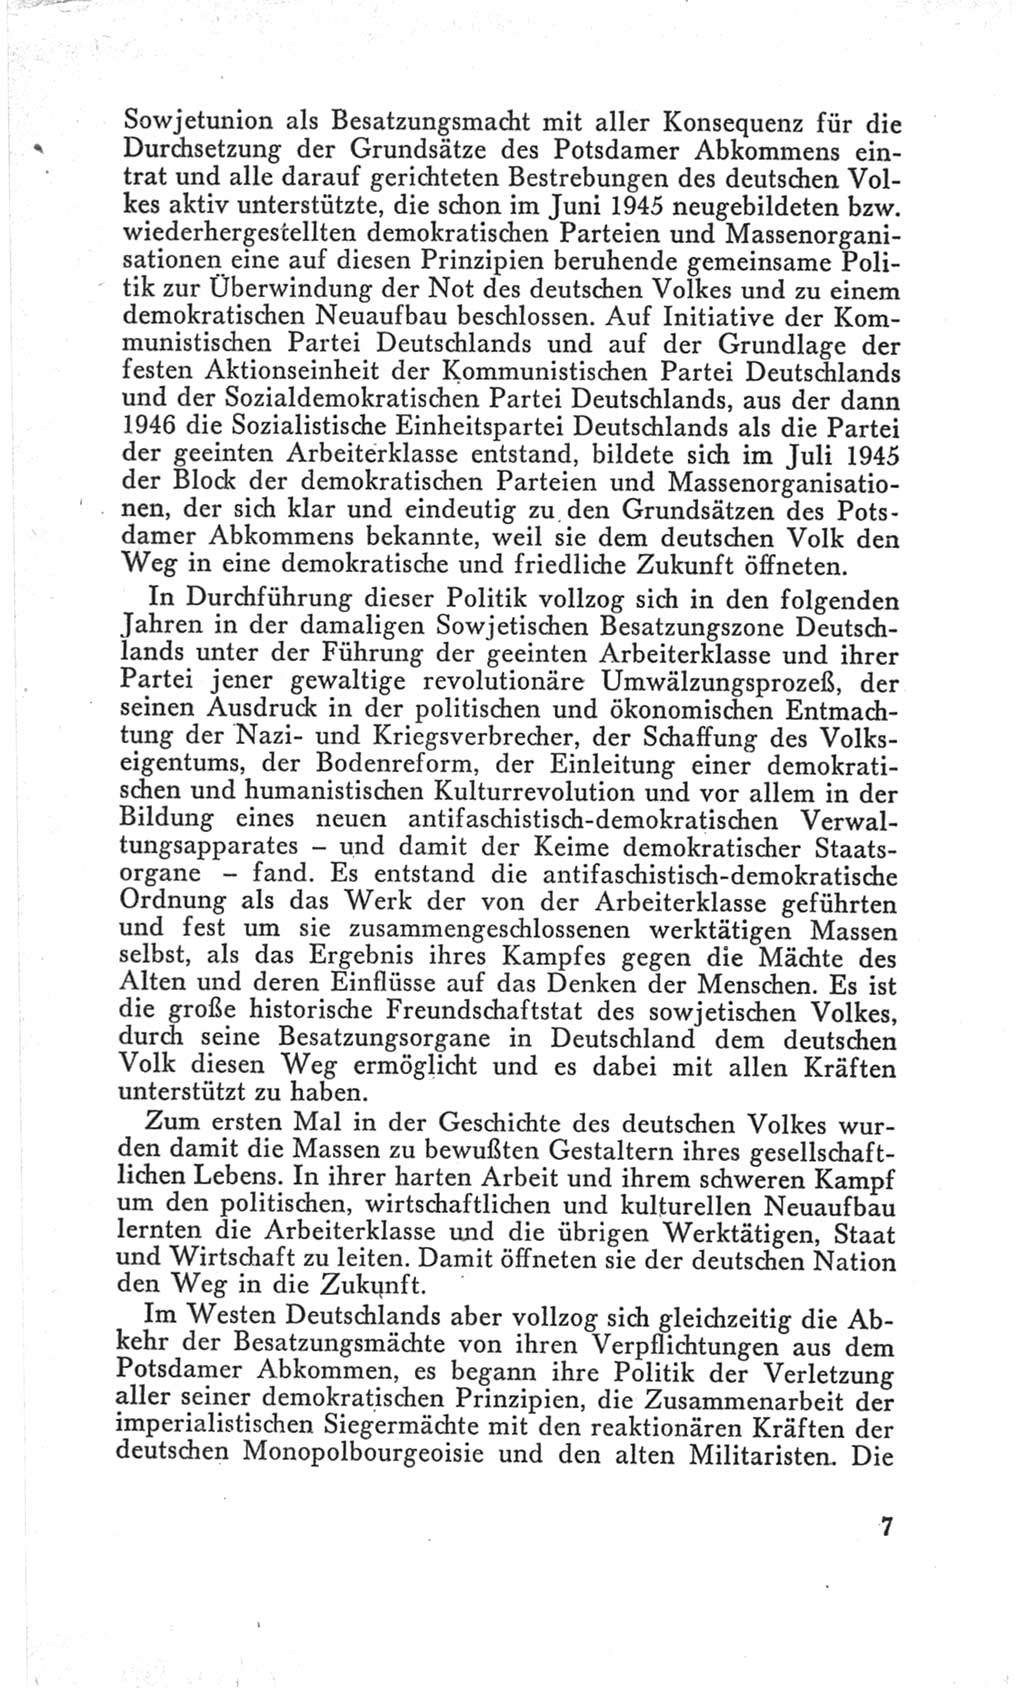 Handbuch der Volkskammer (VK) der Deutschen Demokratischen Republik (DDR), 3. Wahlperiode 1958-1963, Seite 7 (Hdb. VK. DDR 3. WP. 1958-1963, S. 7)